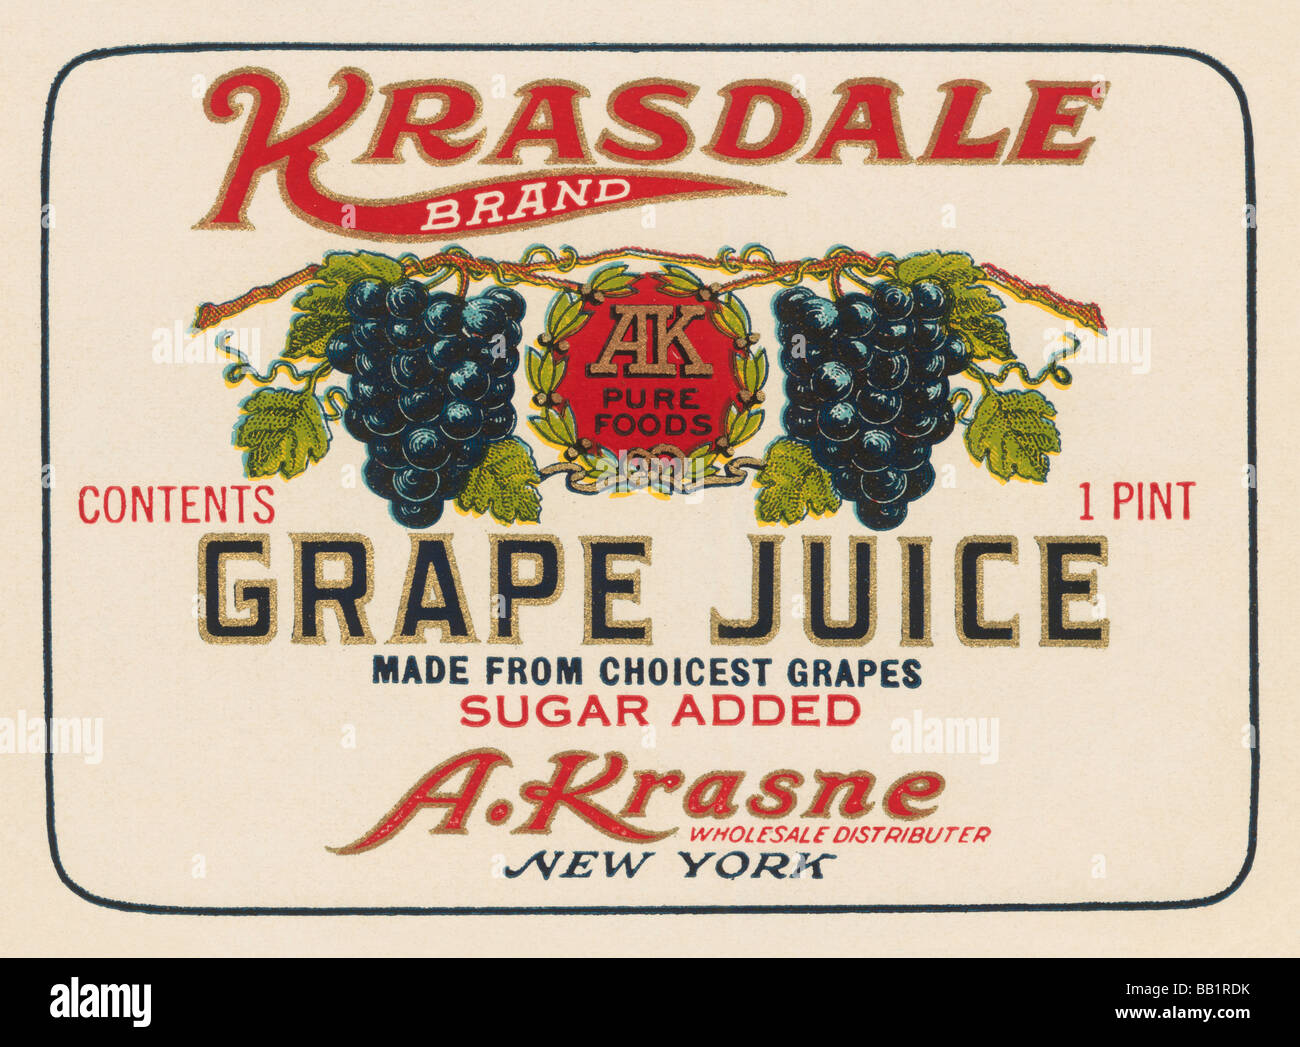 Kransdale marca di succhi di uve Foto Stock